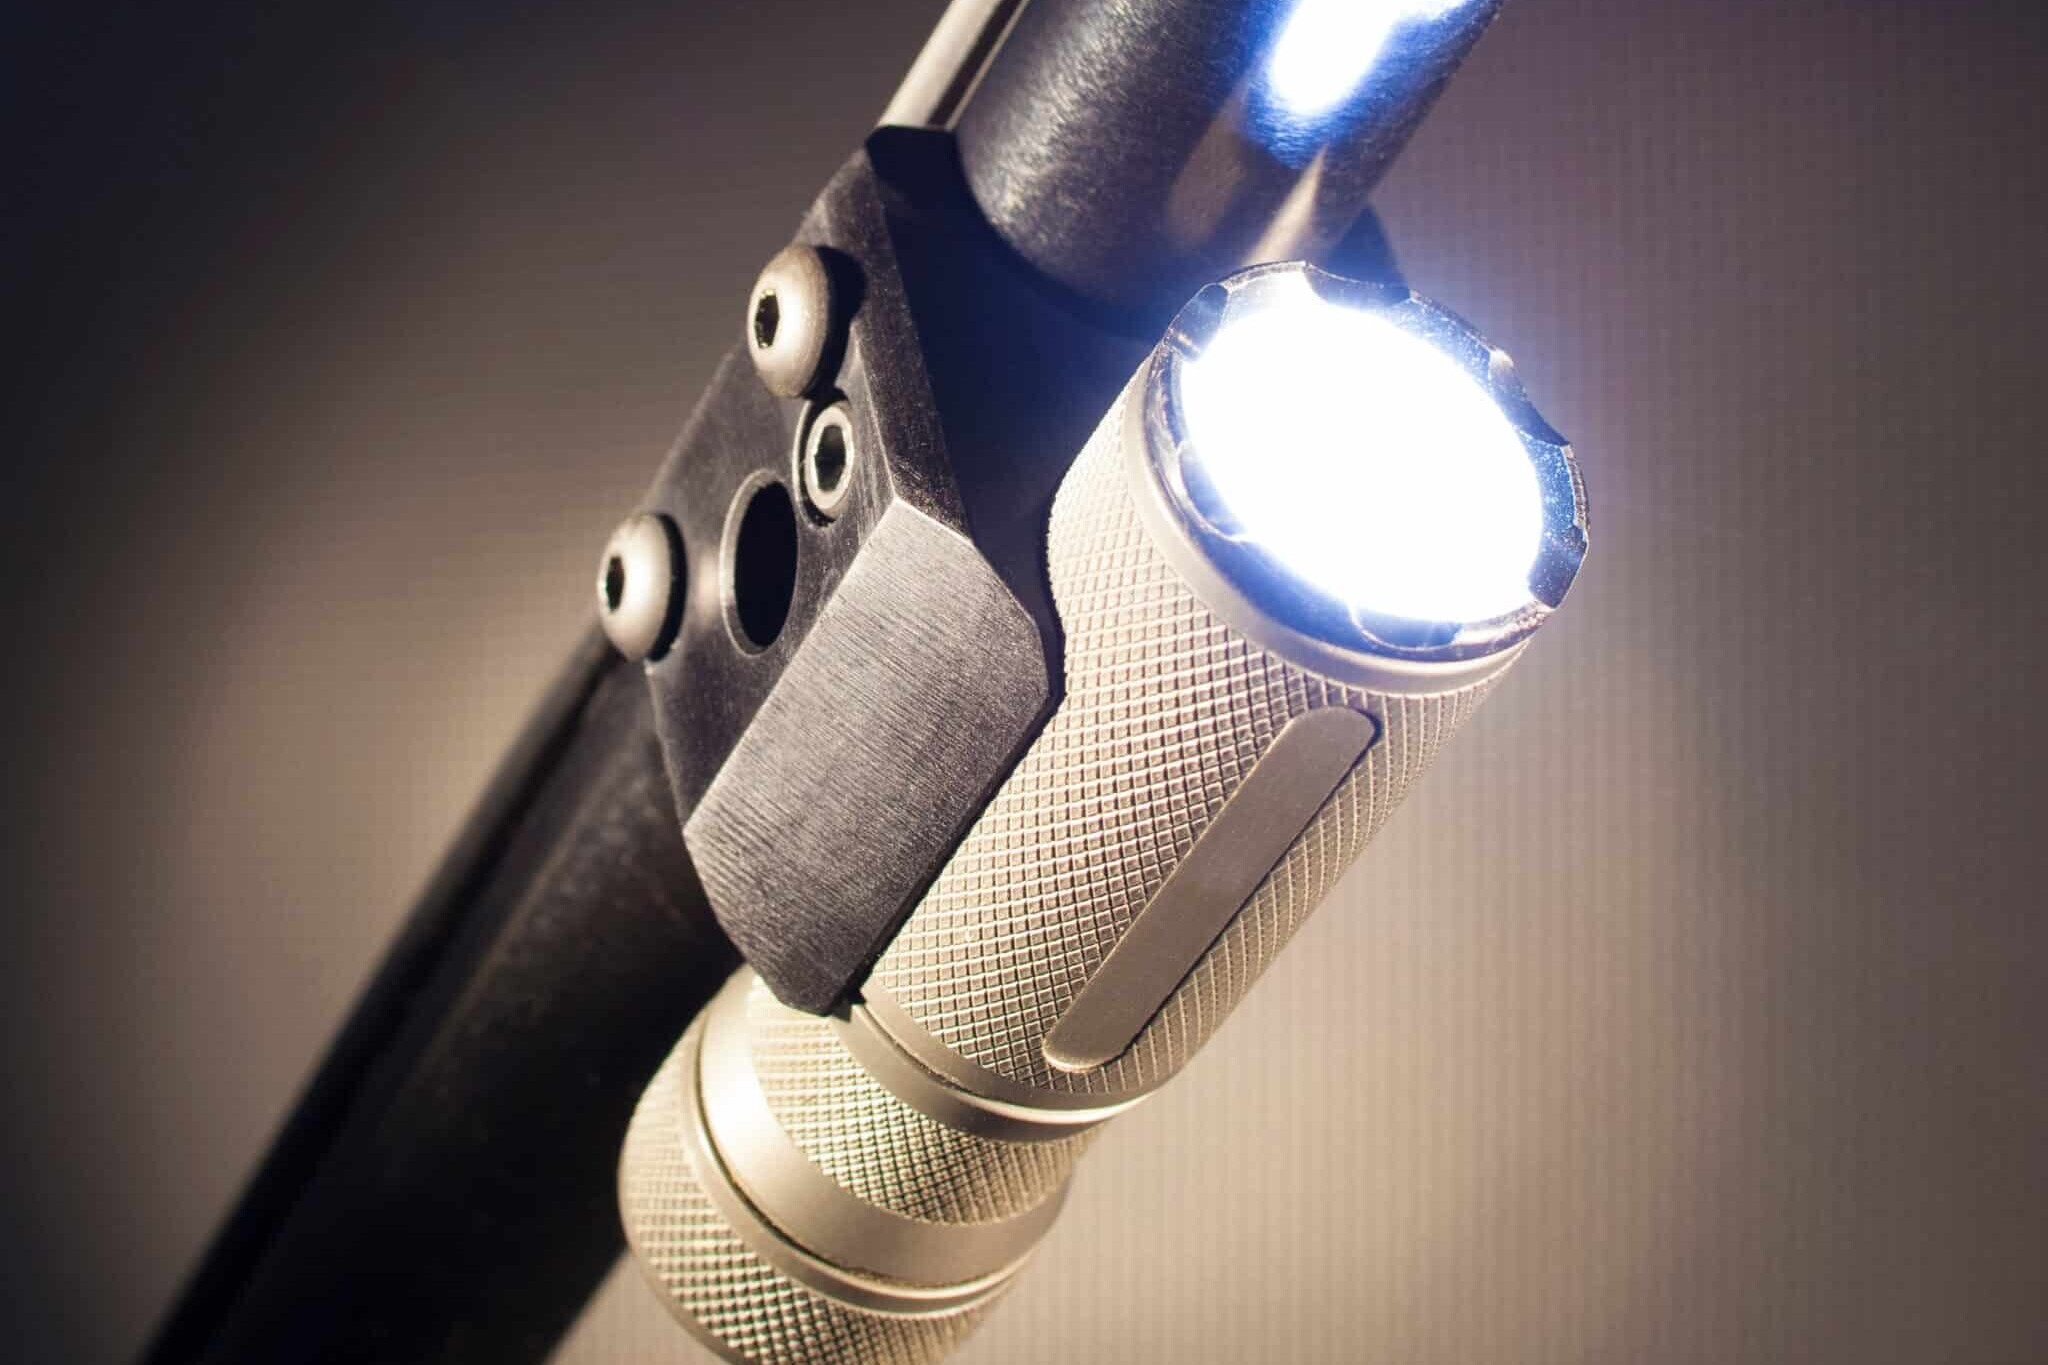 Flashlight mounted currens sub pyrobolum dolii